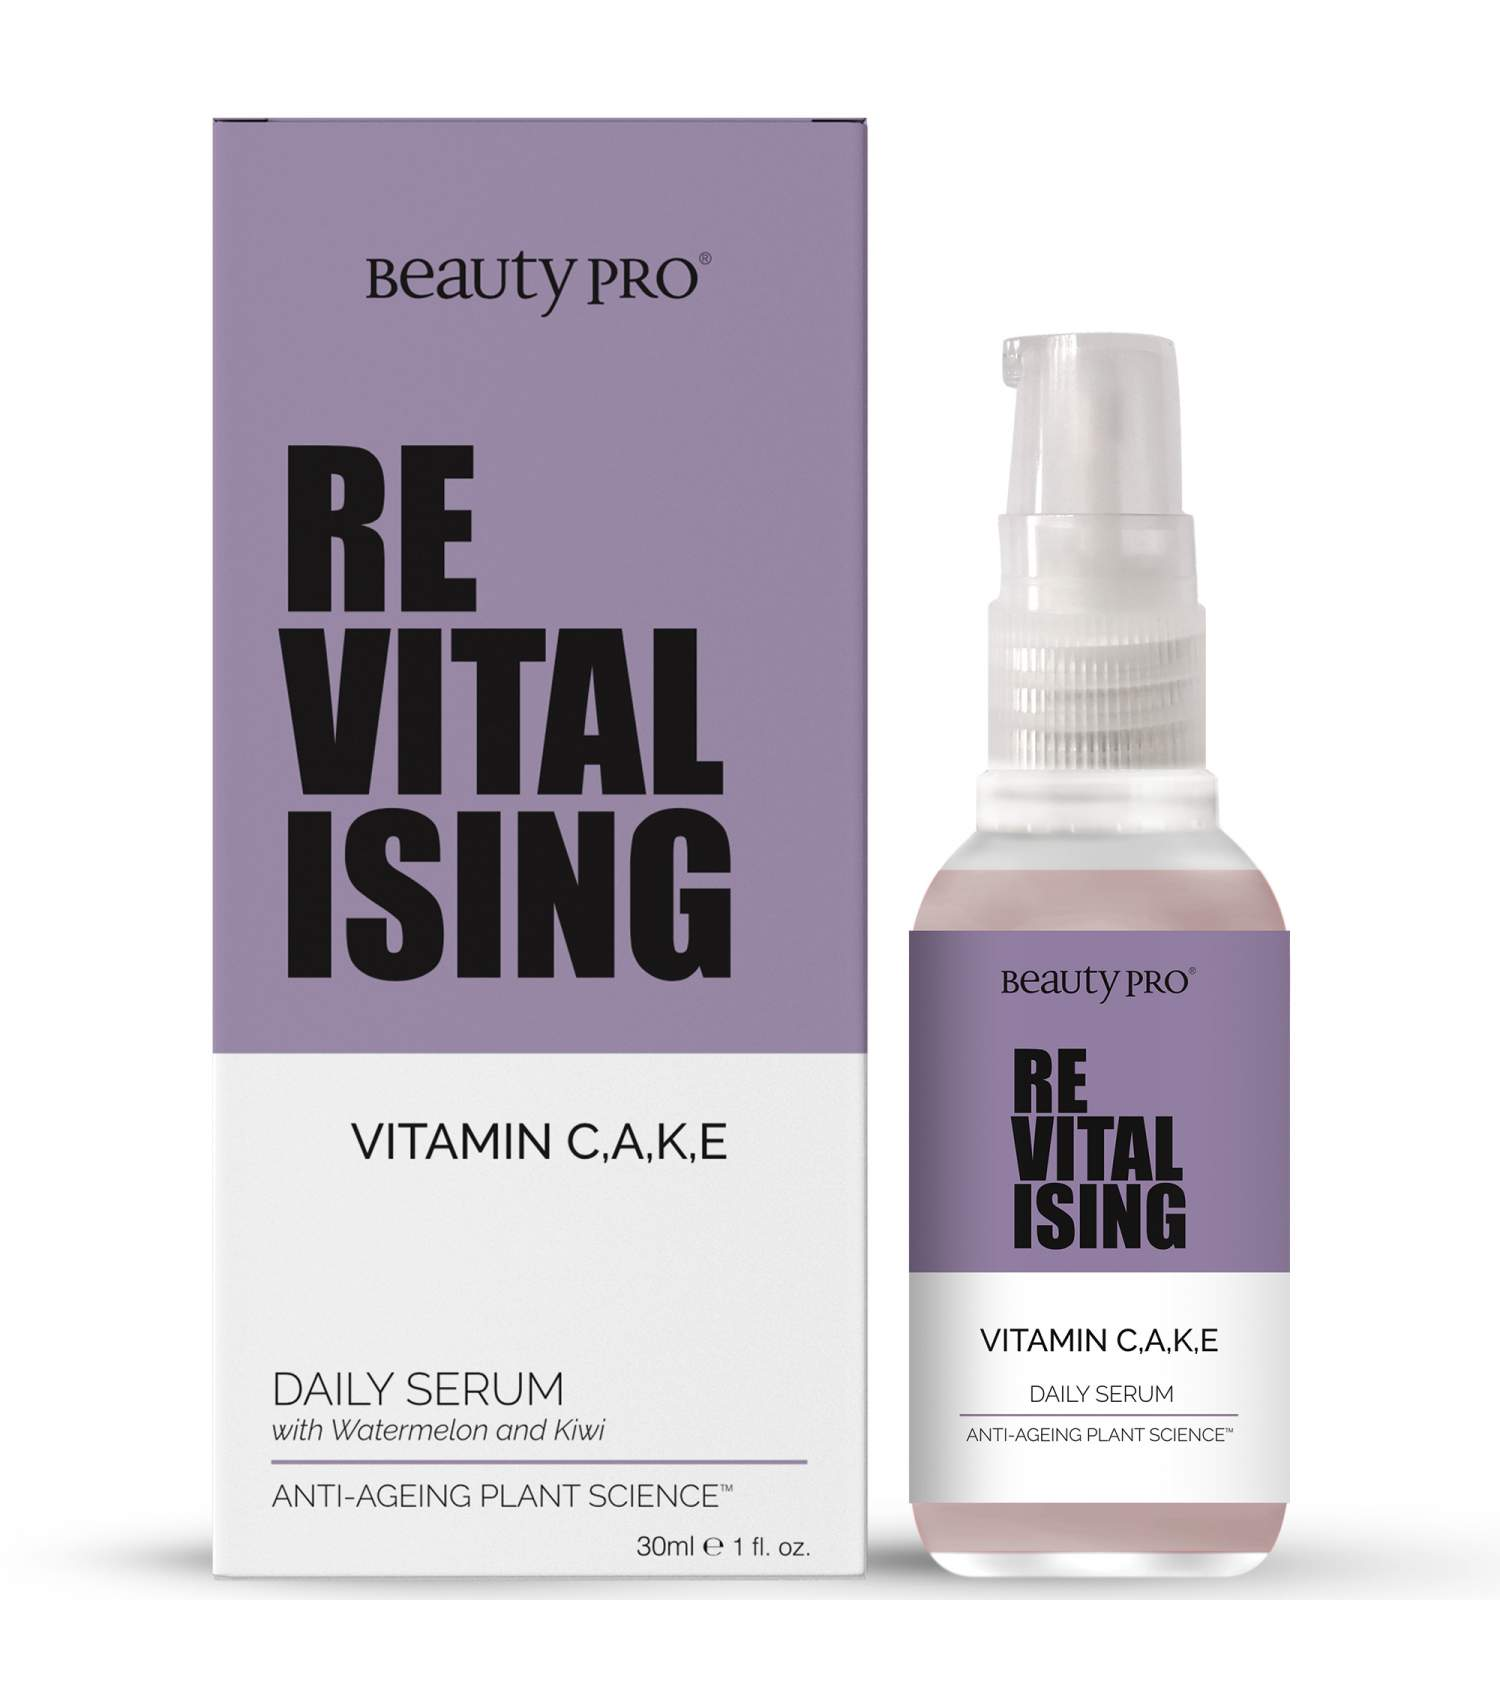 BeautyPro REVITALISING Vitamin CAKE Daily Serum